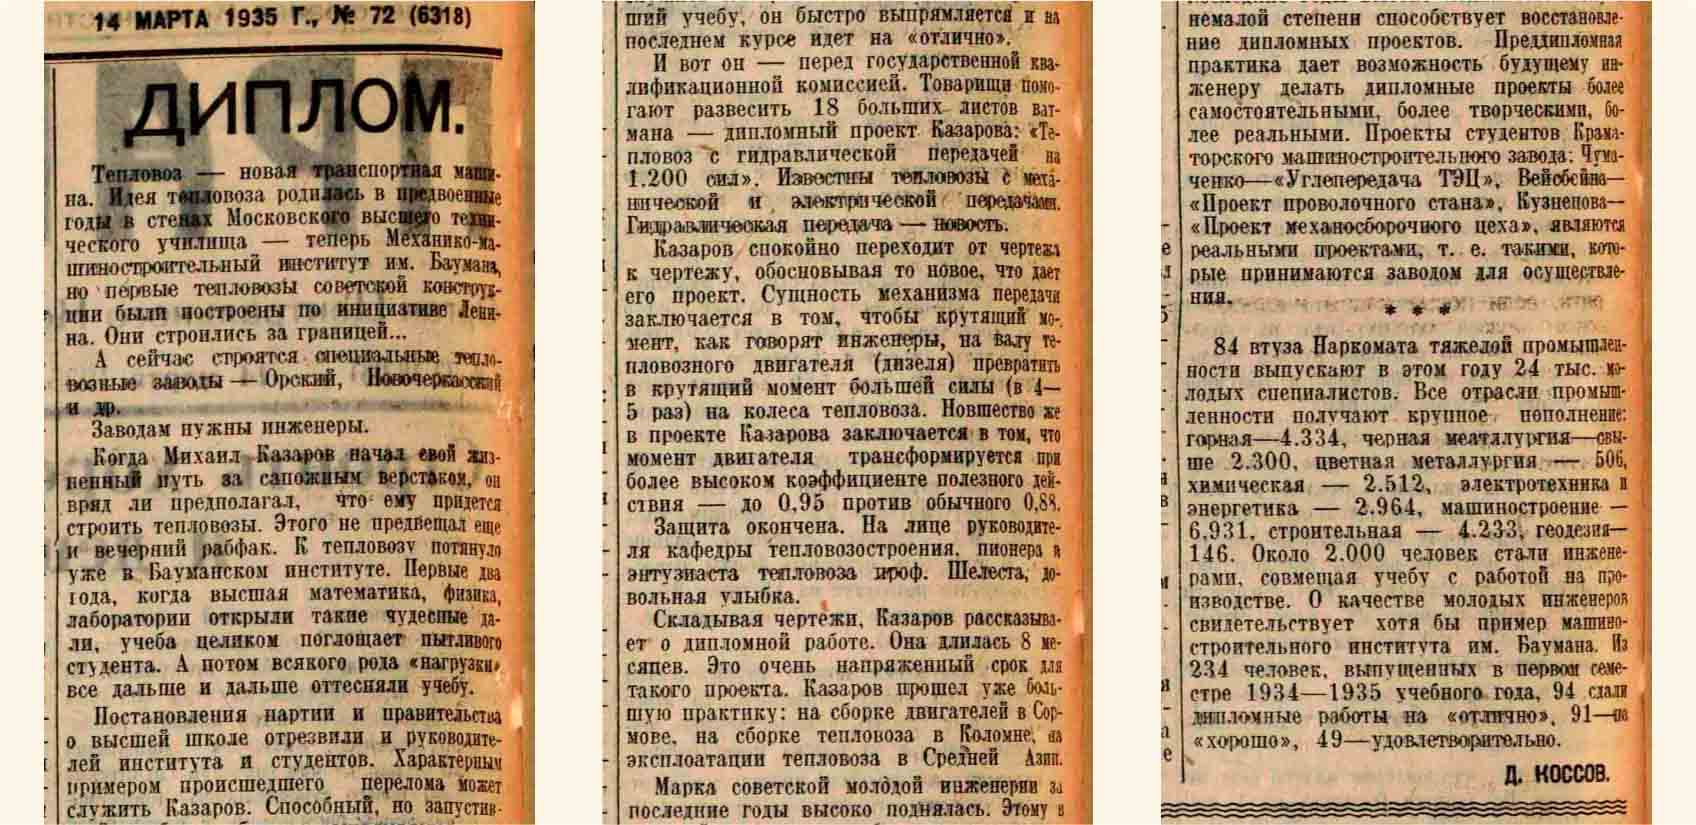 Д. Коссов. Диплом (в МММИ им. Баумана) Правда, 1935